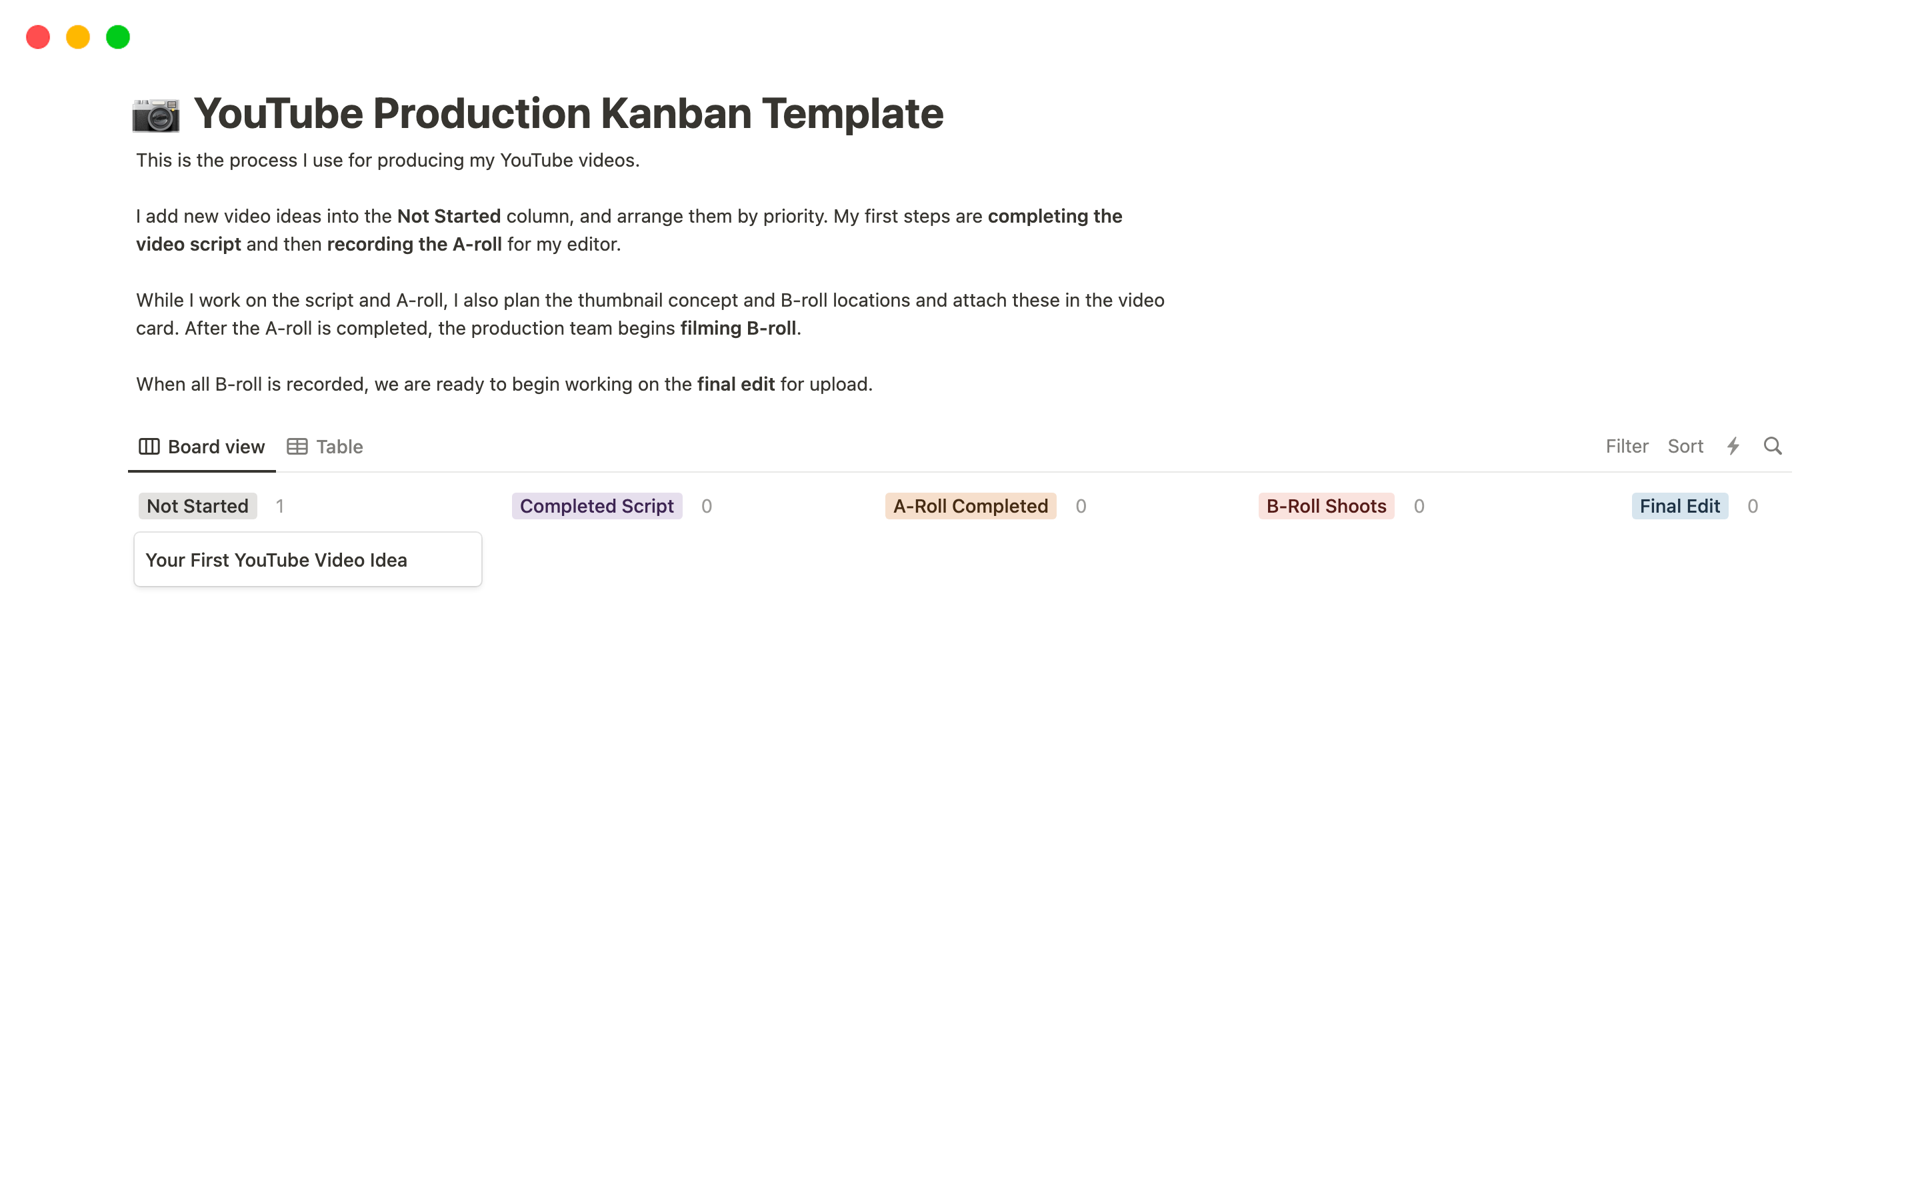 Eine Vorlagenvorschau für Captain Sinbad’s YouTube Production Kanban